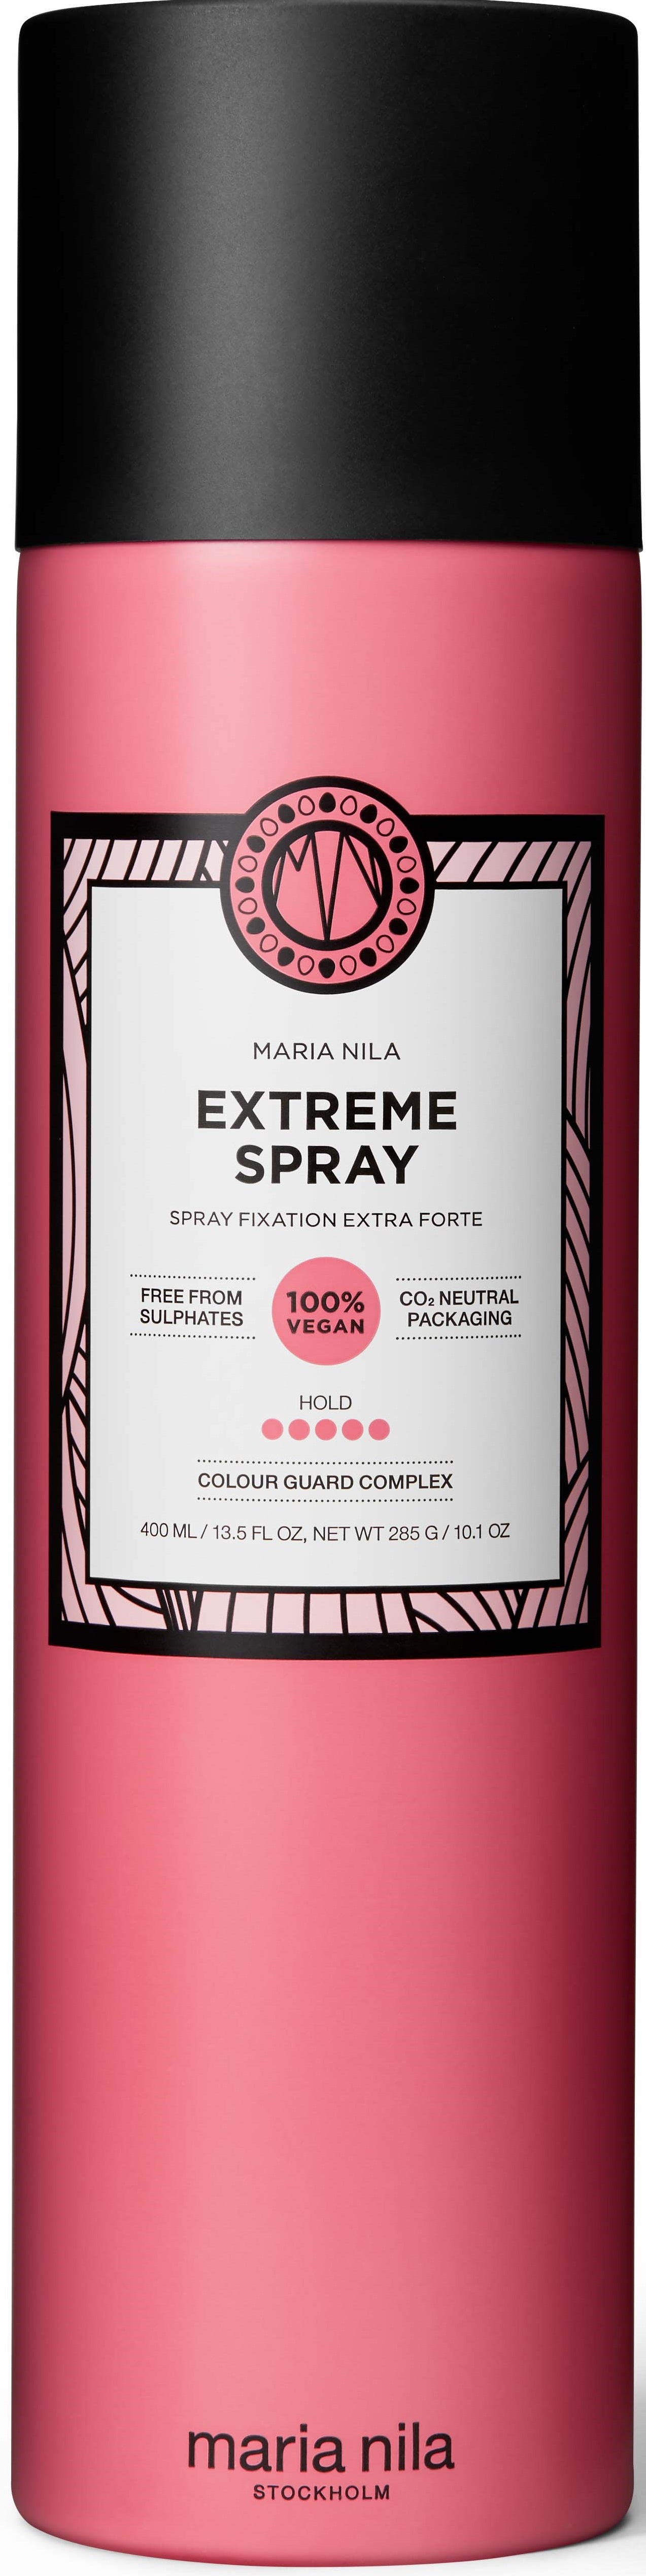 Maria Nila Extreme Spray